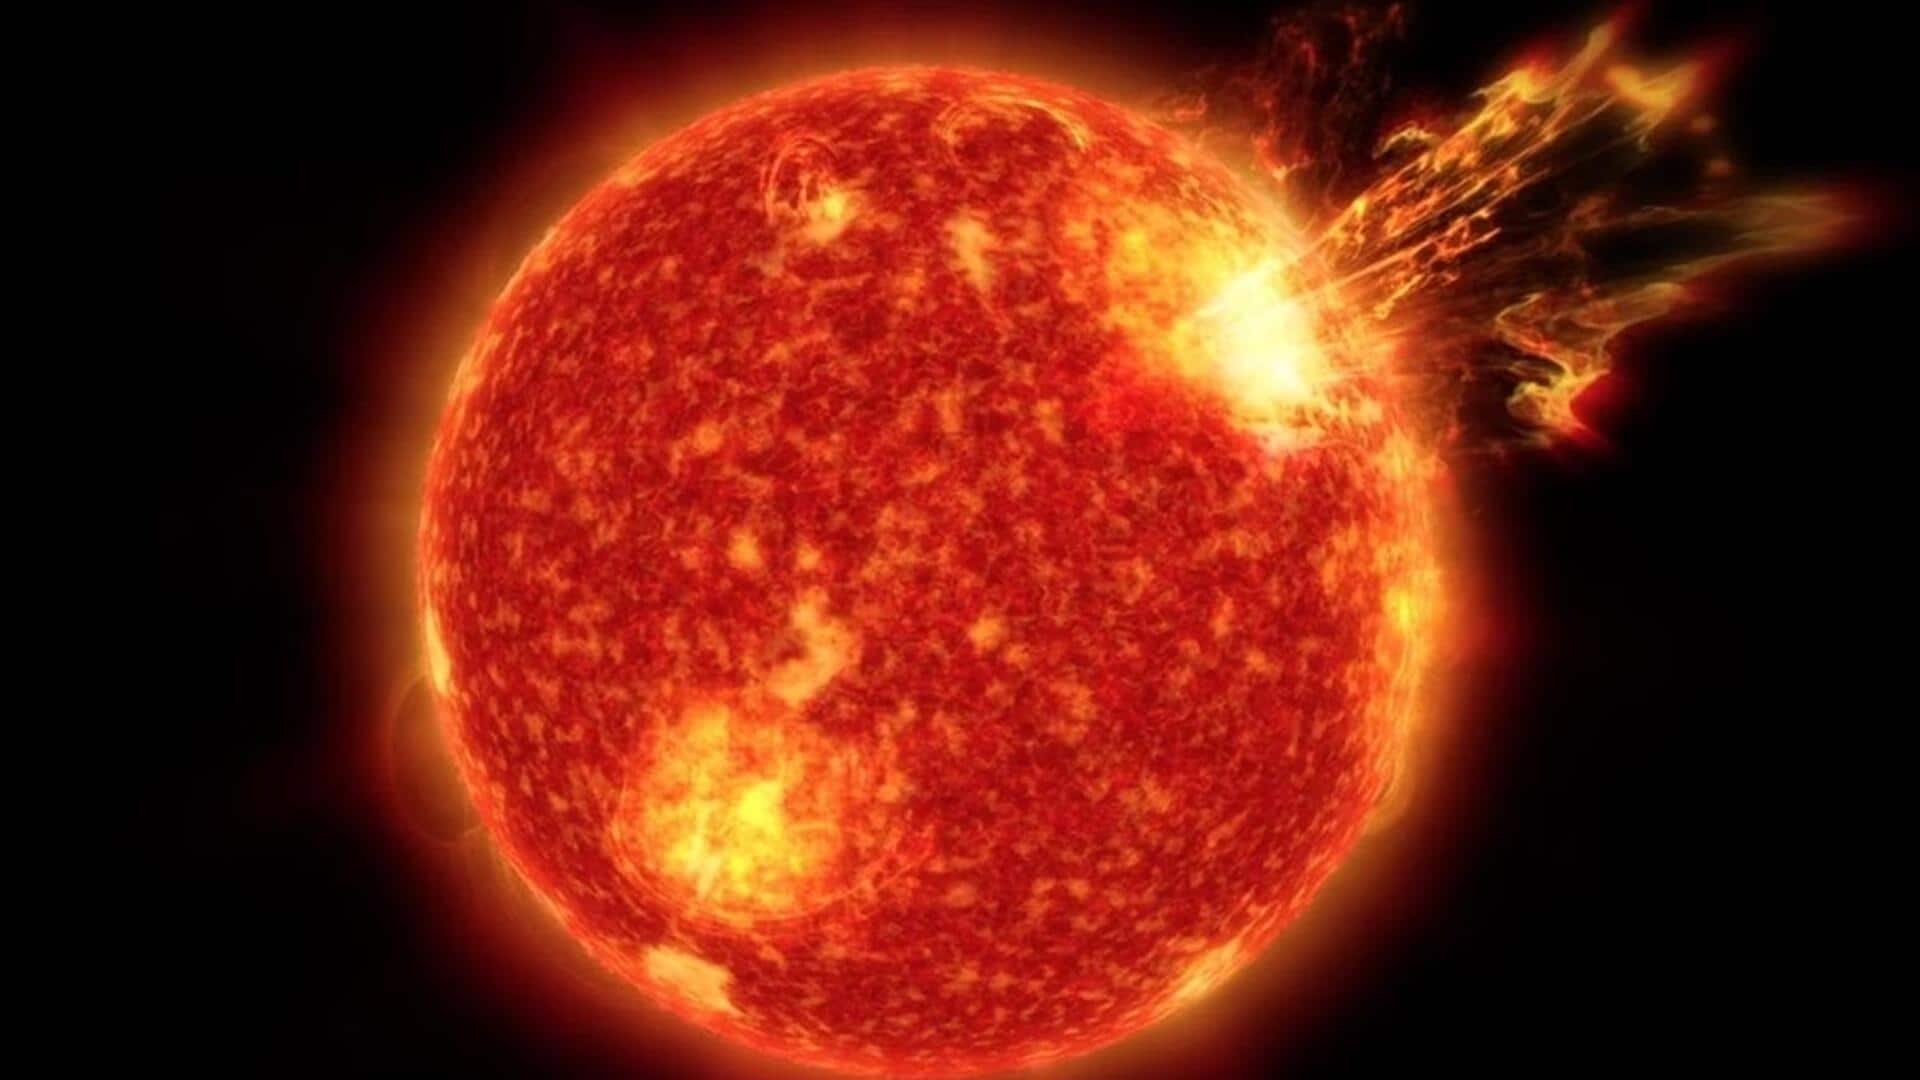 सूर्य पर विस्फोट के बाद पृथ्वी पर सौर तूफान, रेडियो ब्लैकआउट शुरू